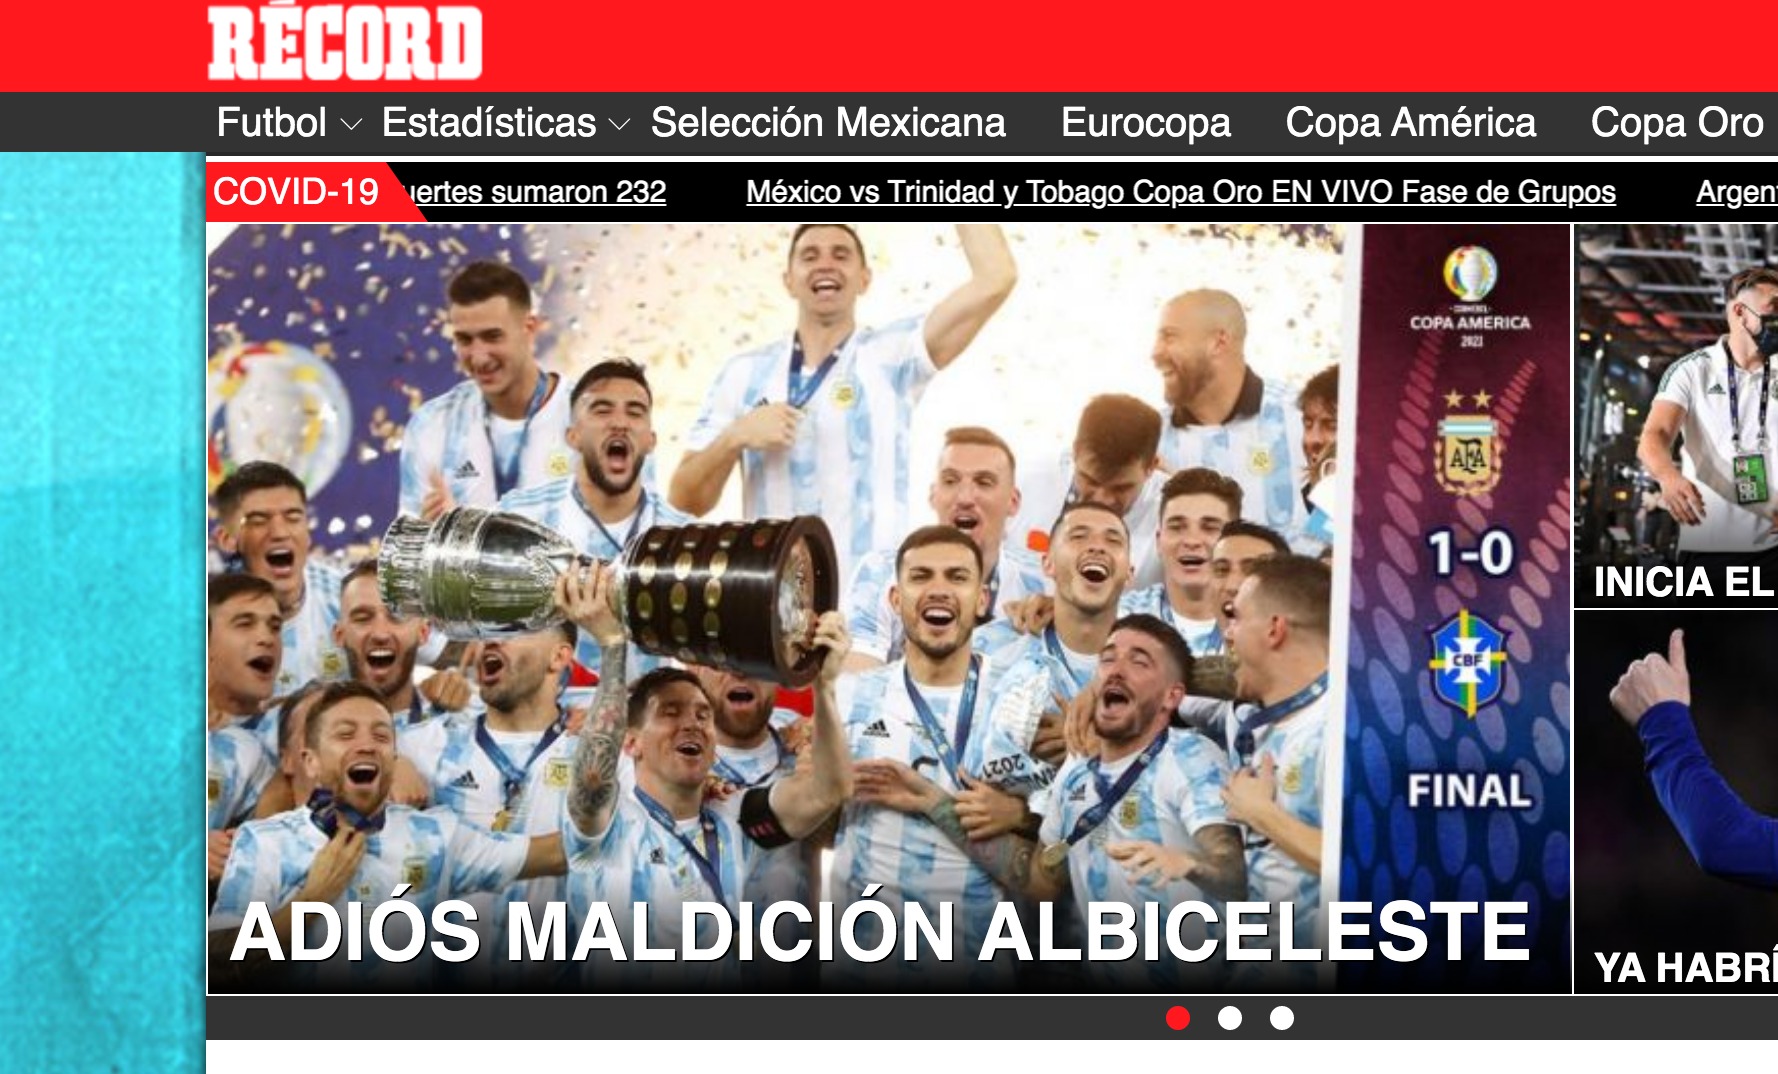 Argentina ganó la Copa América 2021 y provocó estas portadas en el mundo.